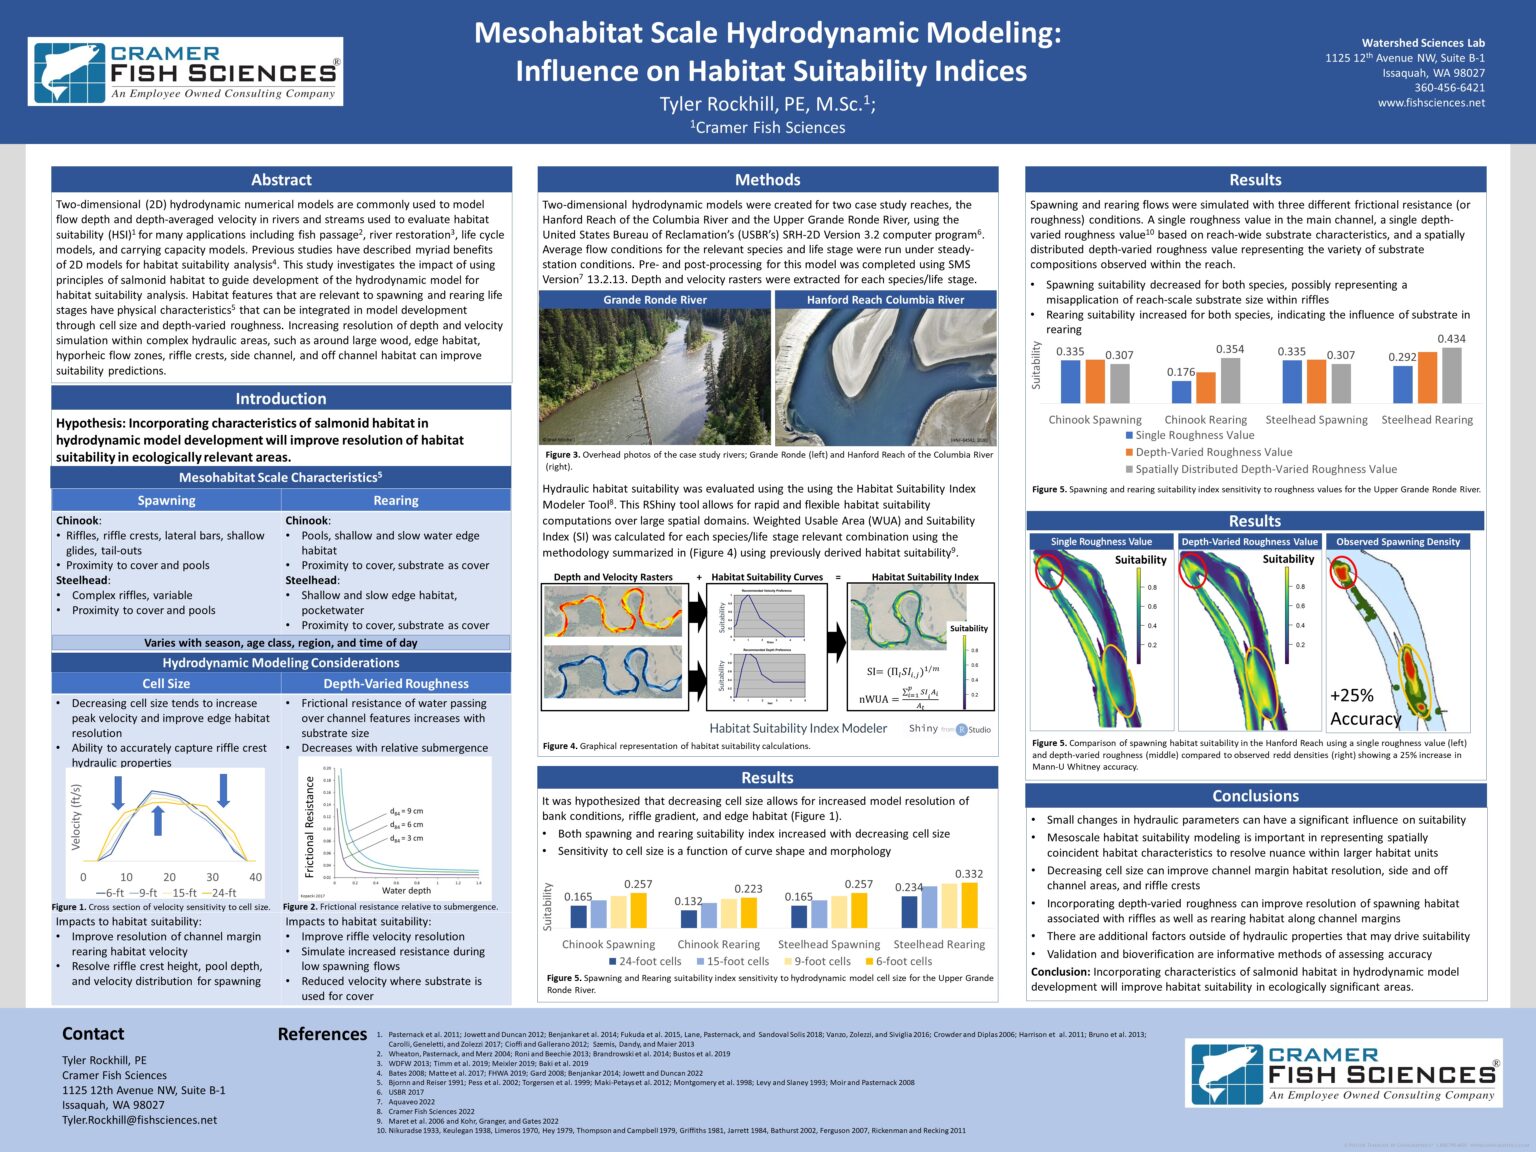 Mesohabitat Scale Hydrodynamic Modeling Influence on Habitat ...